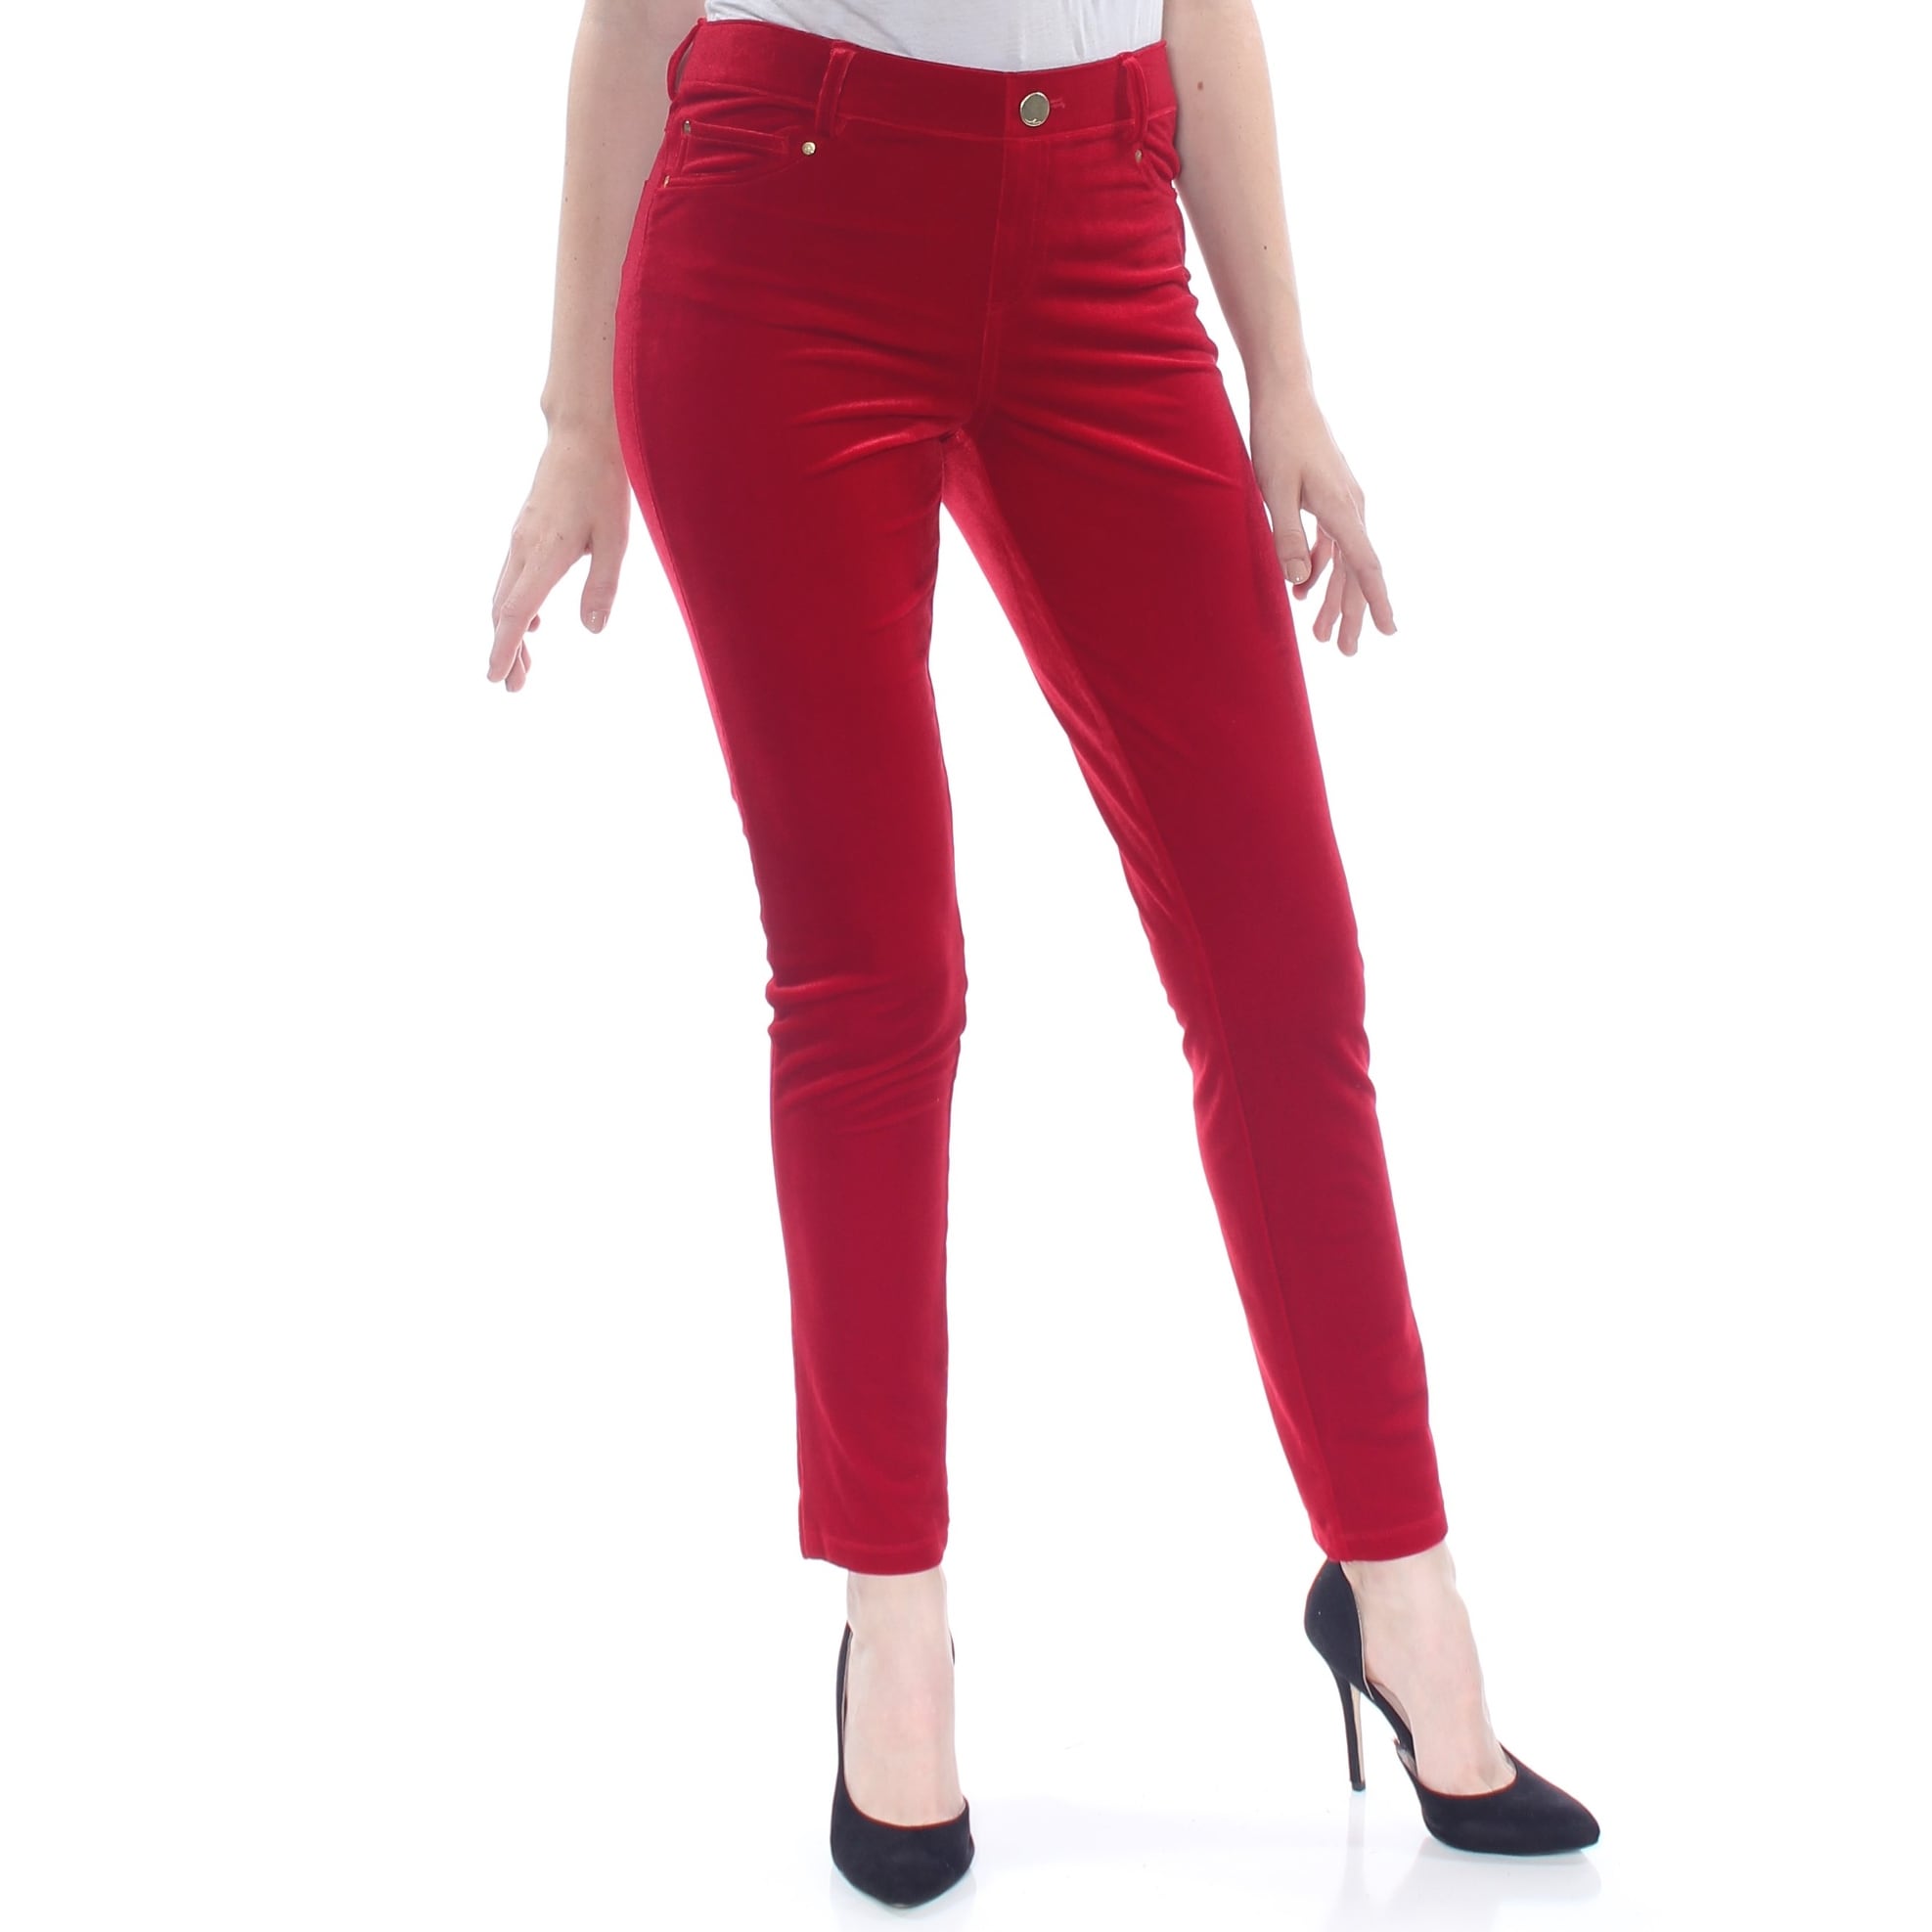 red velvet pants womens